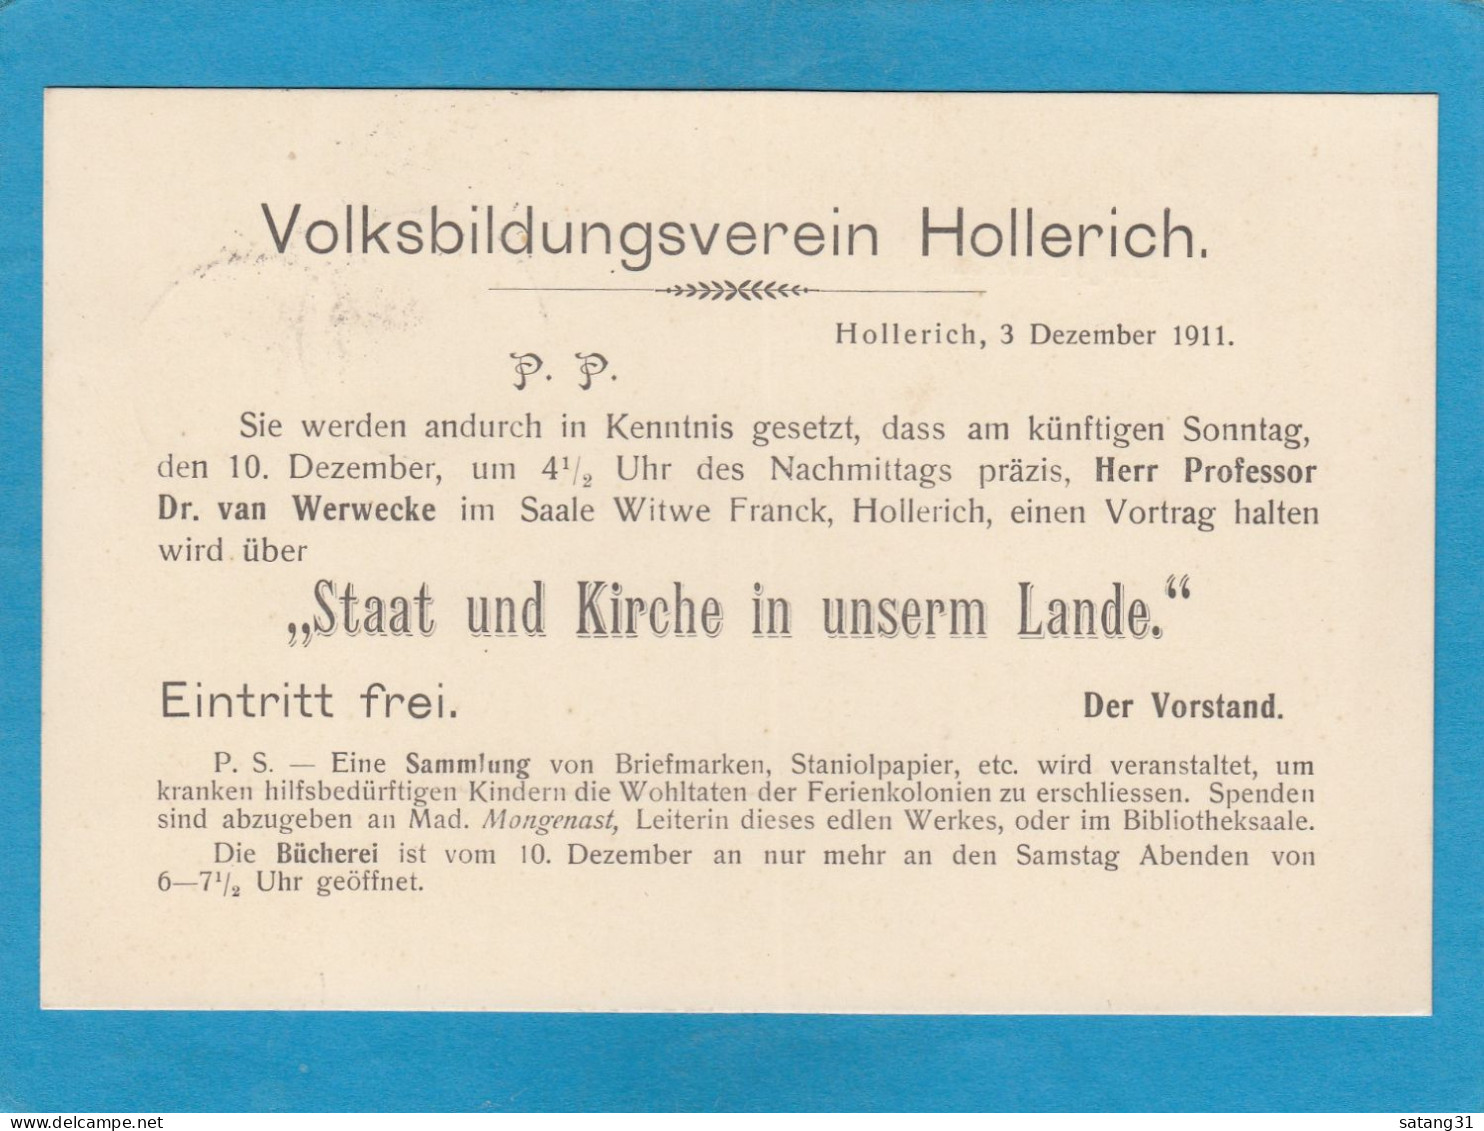 VOLKSBILDUNGSVEREIN HOLLERICH. POSTKARTE AUS LUXEMBURG NACH HOLLERICH,1911. - 1907-24 Ecusson